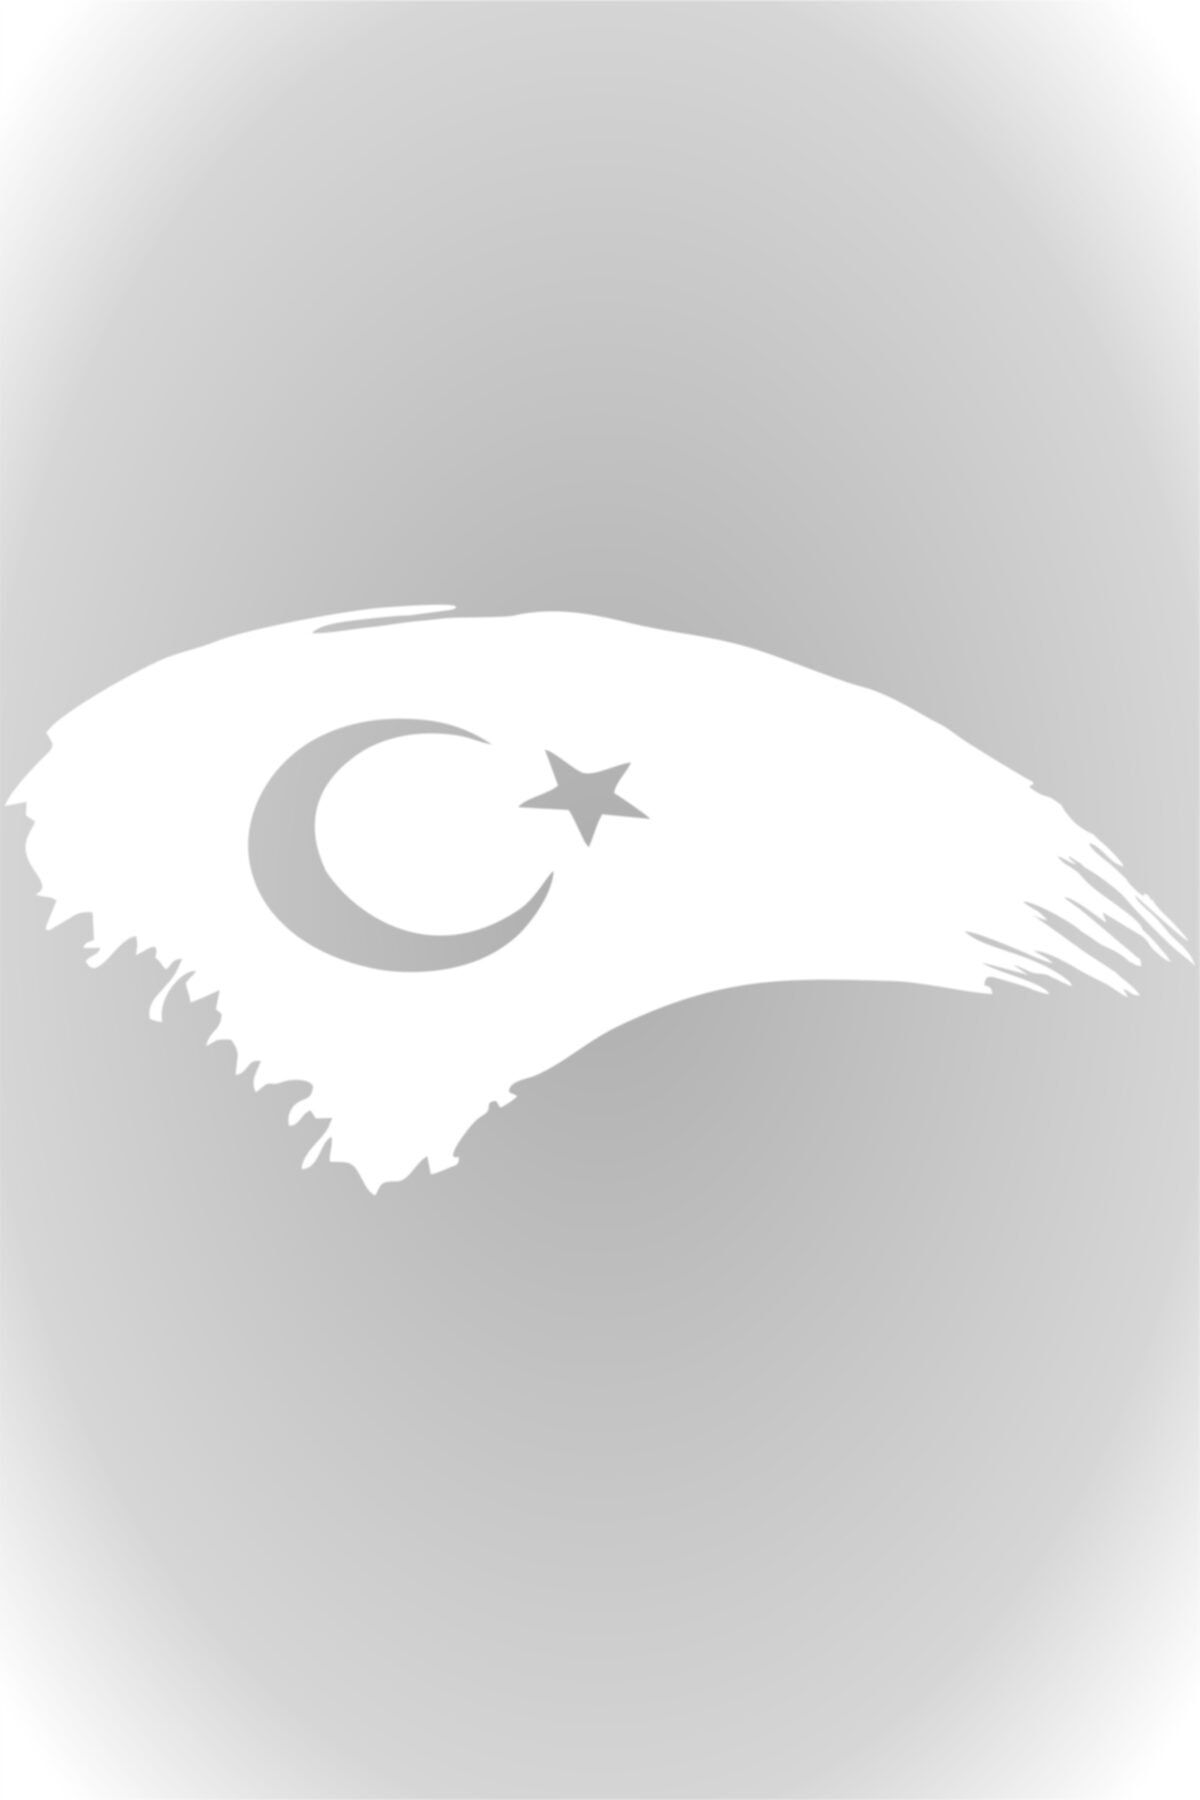 Quart Aksesuar Türk Bayrağı Türkiye Bayrak Sticker Beyaz 20 X 10 Cm